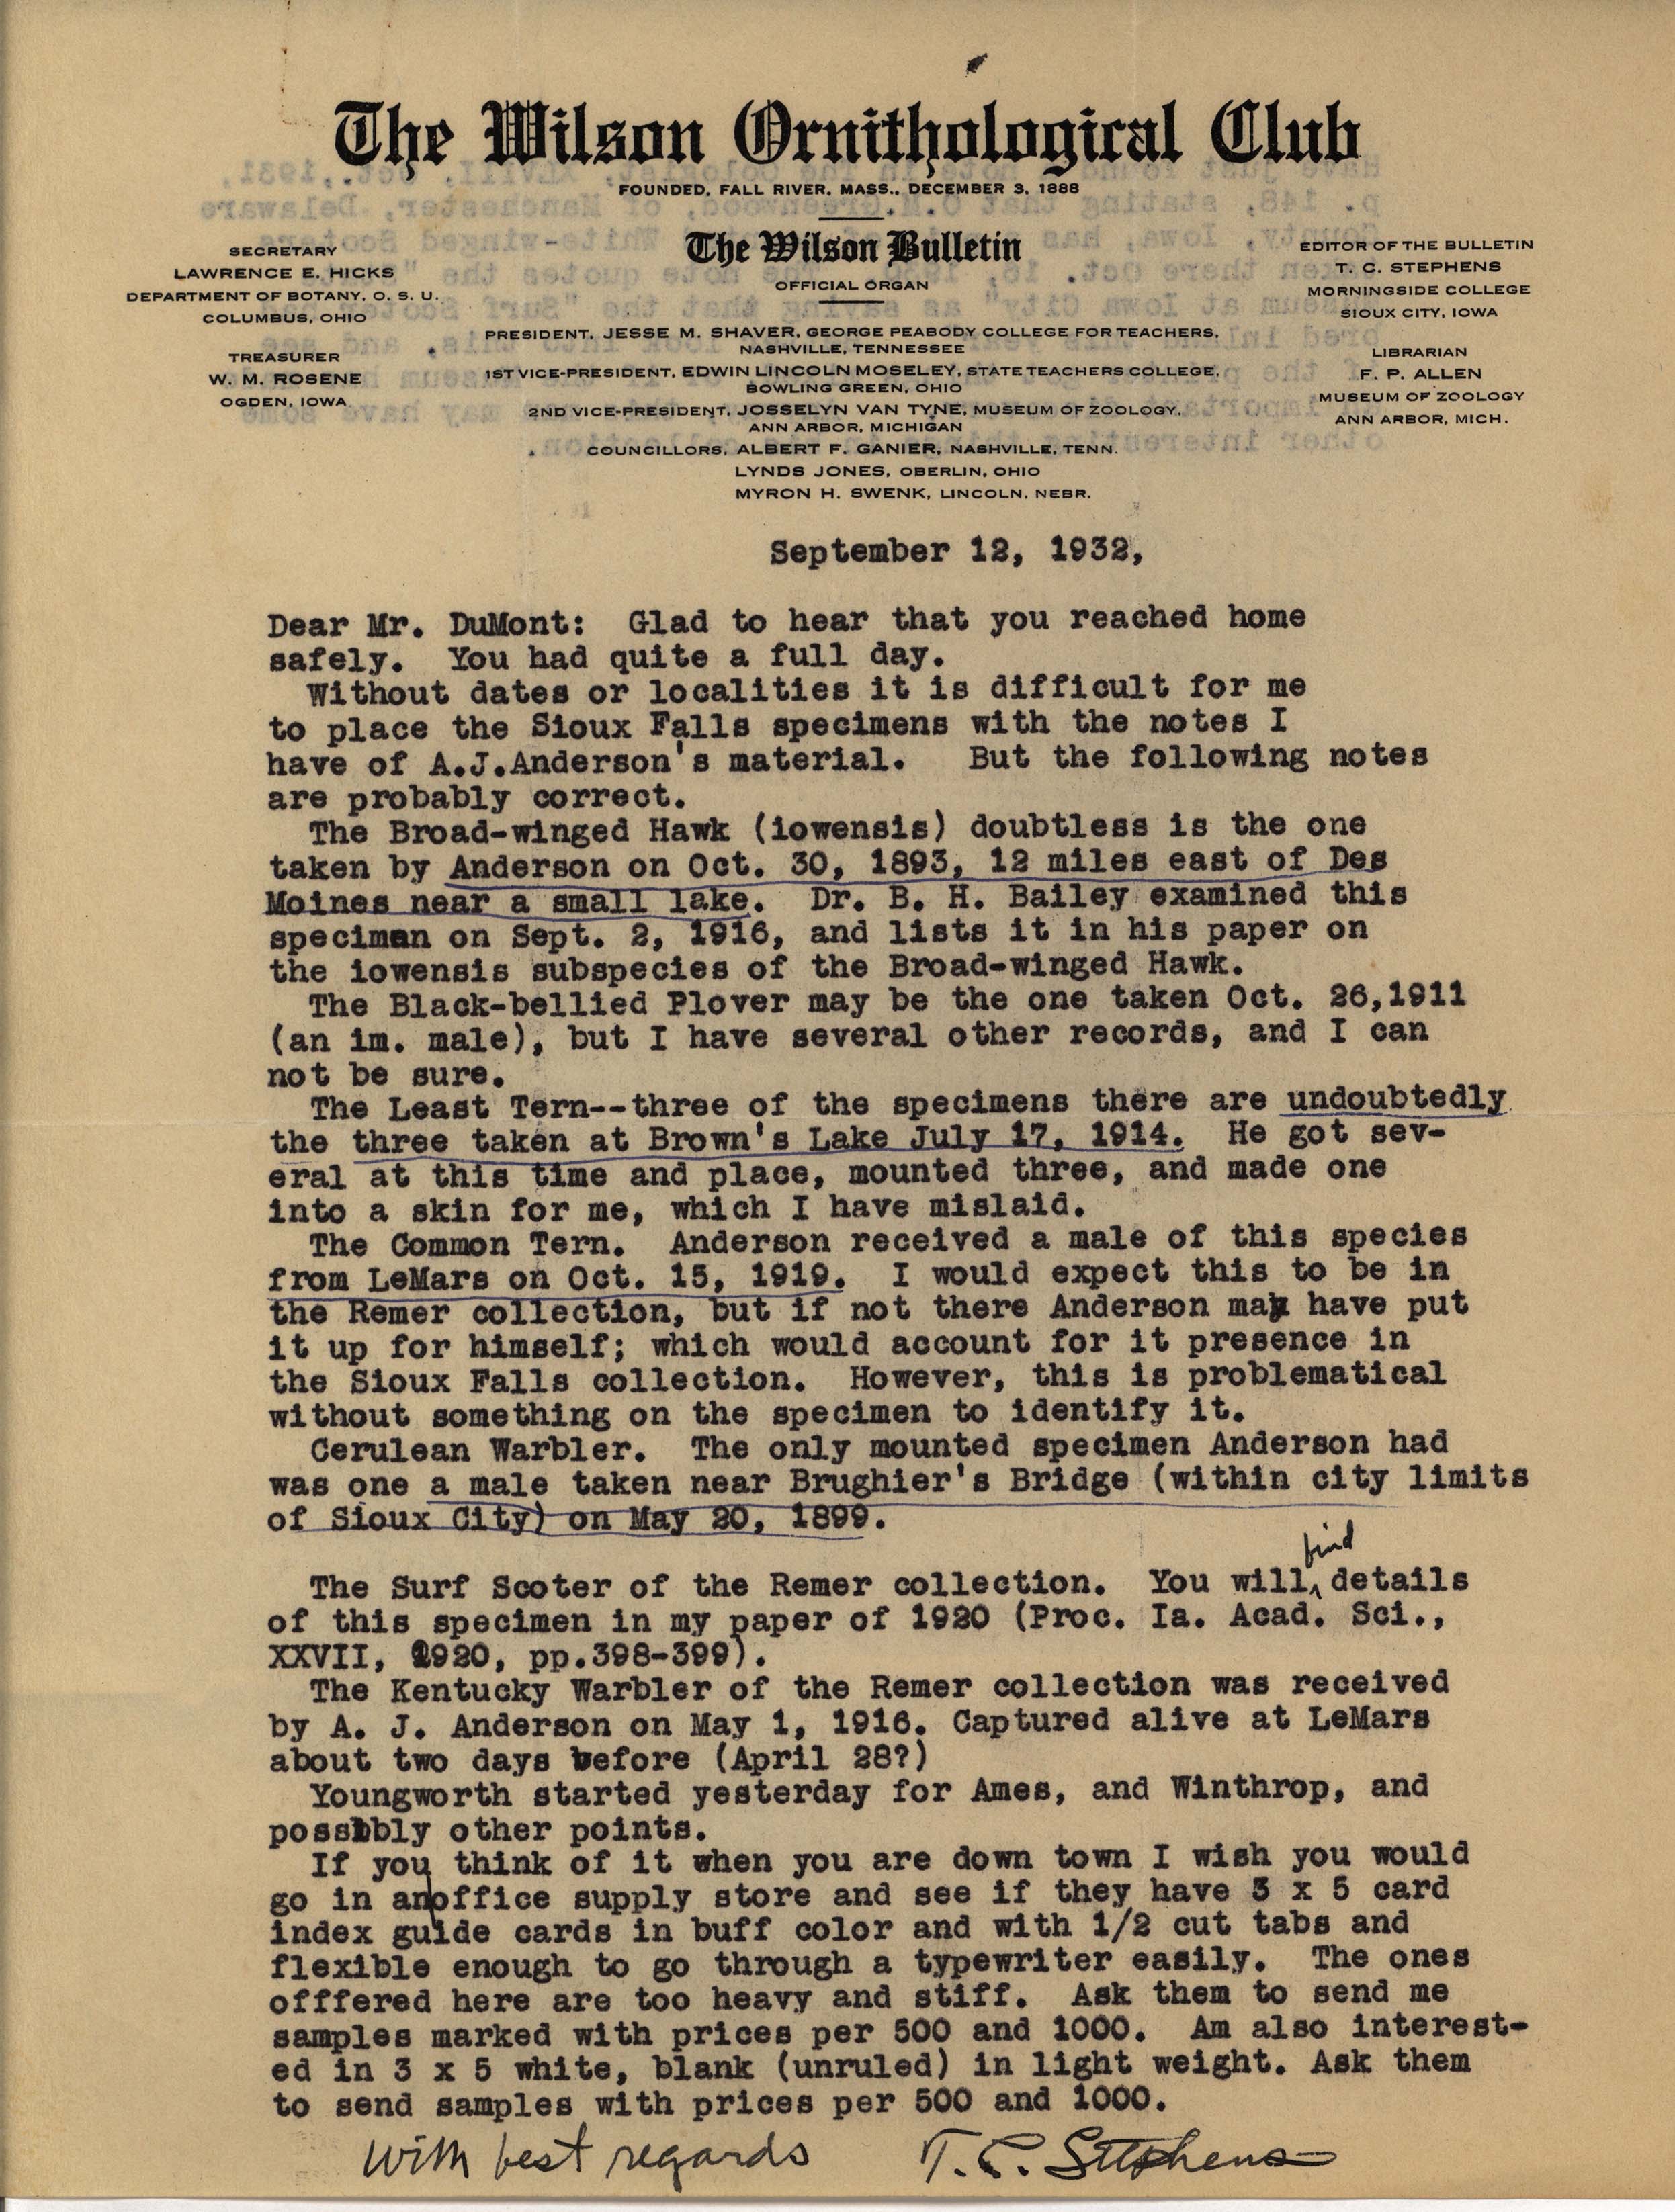 Thomas Stephens letter to Philip DuMont regarding specimens, September 12, 1932